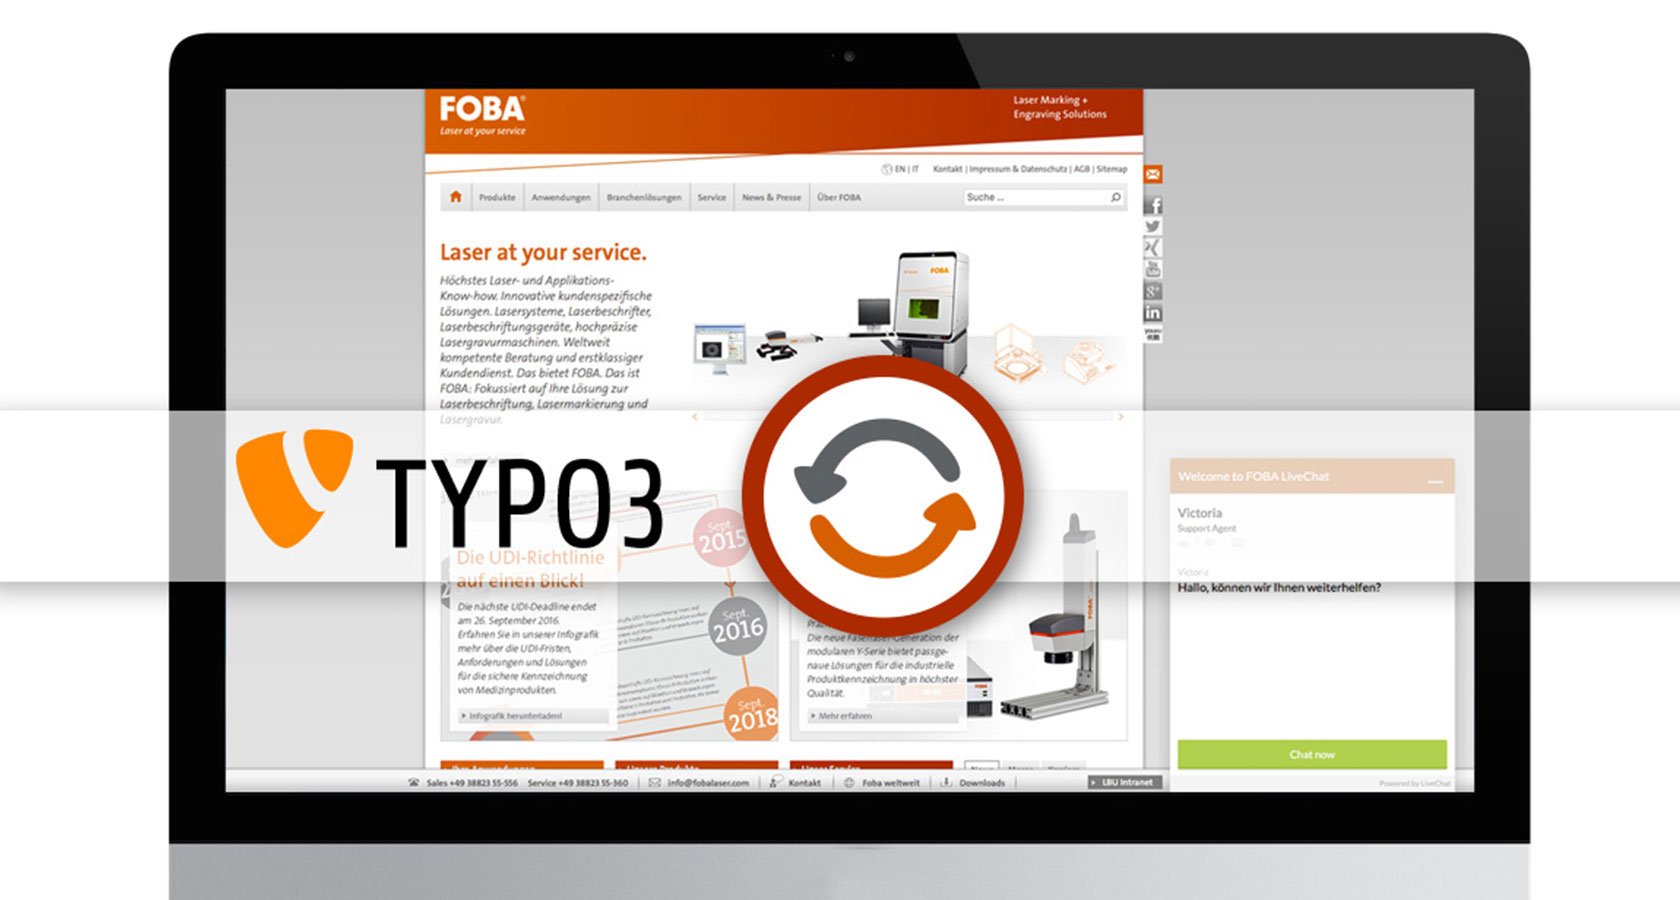 Bild eines iMac mit der Foba Homepage und ein Update Icon und TYPO3 Logo im Vordergrund